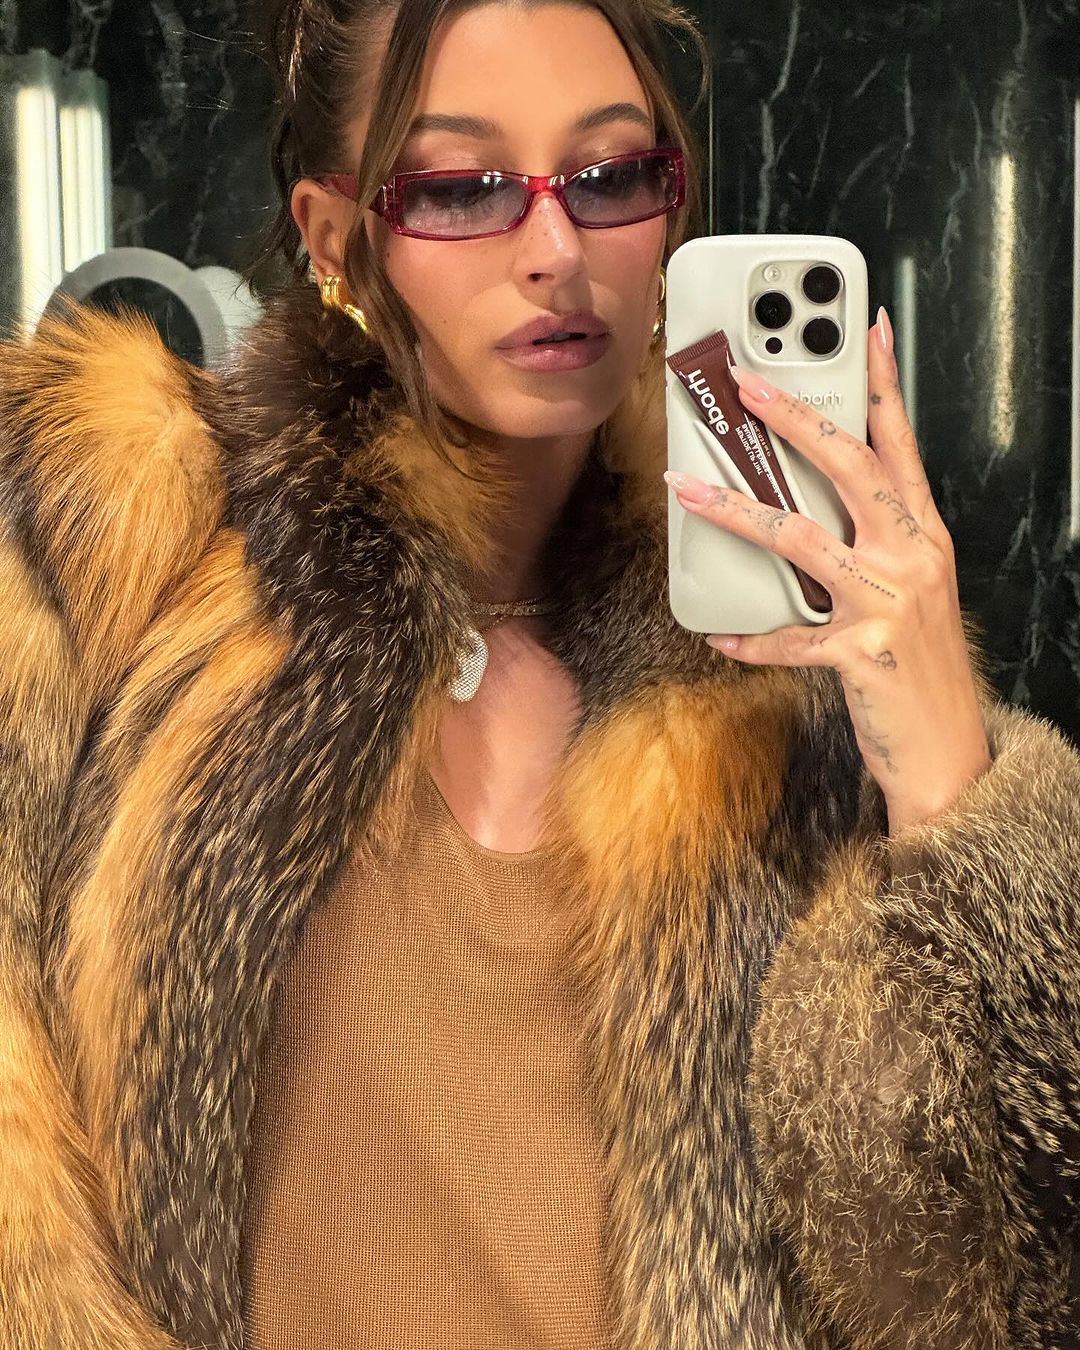 hailey bieber fotografiert sich im Spiegel mit Sonnenbrille